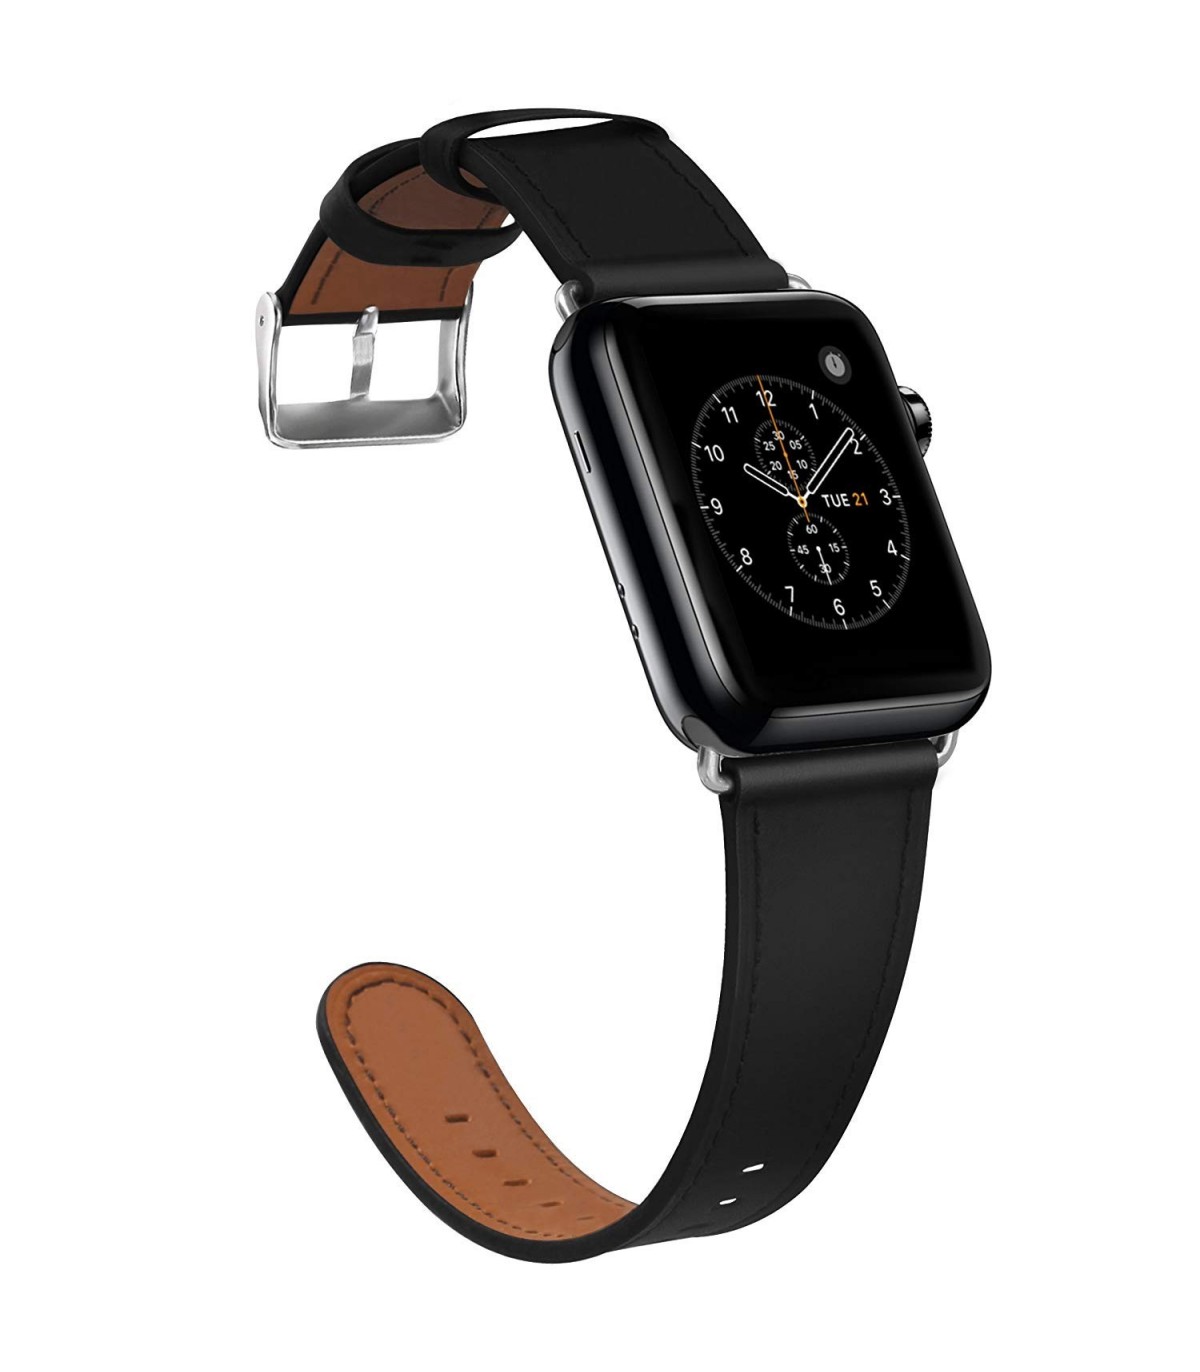 Apple watch ремешок оригинал купить